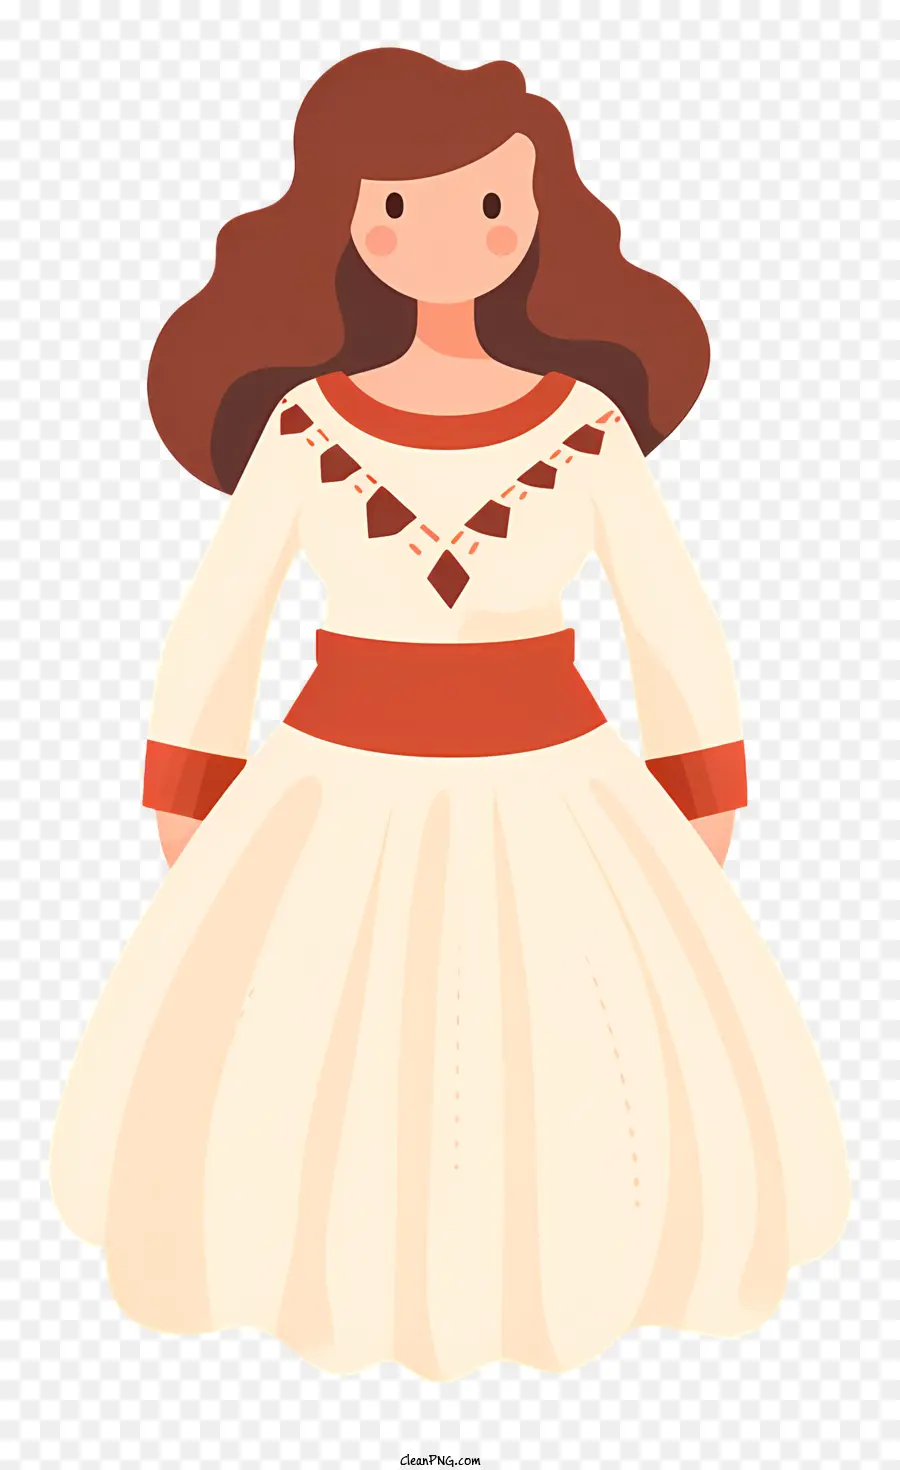 Người phụ nữ mặc váy trắng sash màu đỏ tay áo dài cổ áo dài màu nâu - Người phụ nữ nghiêm túc mặc váy trắng với sash màu đỏ